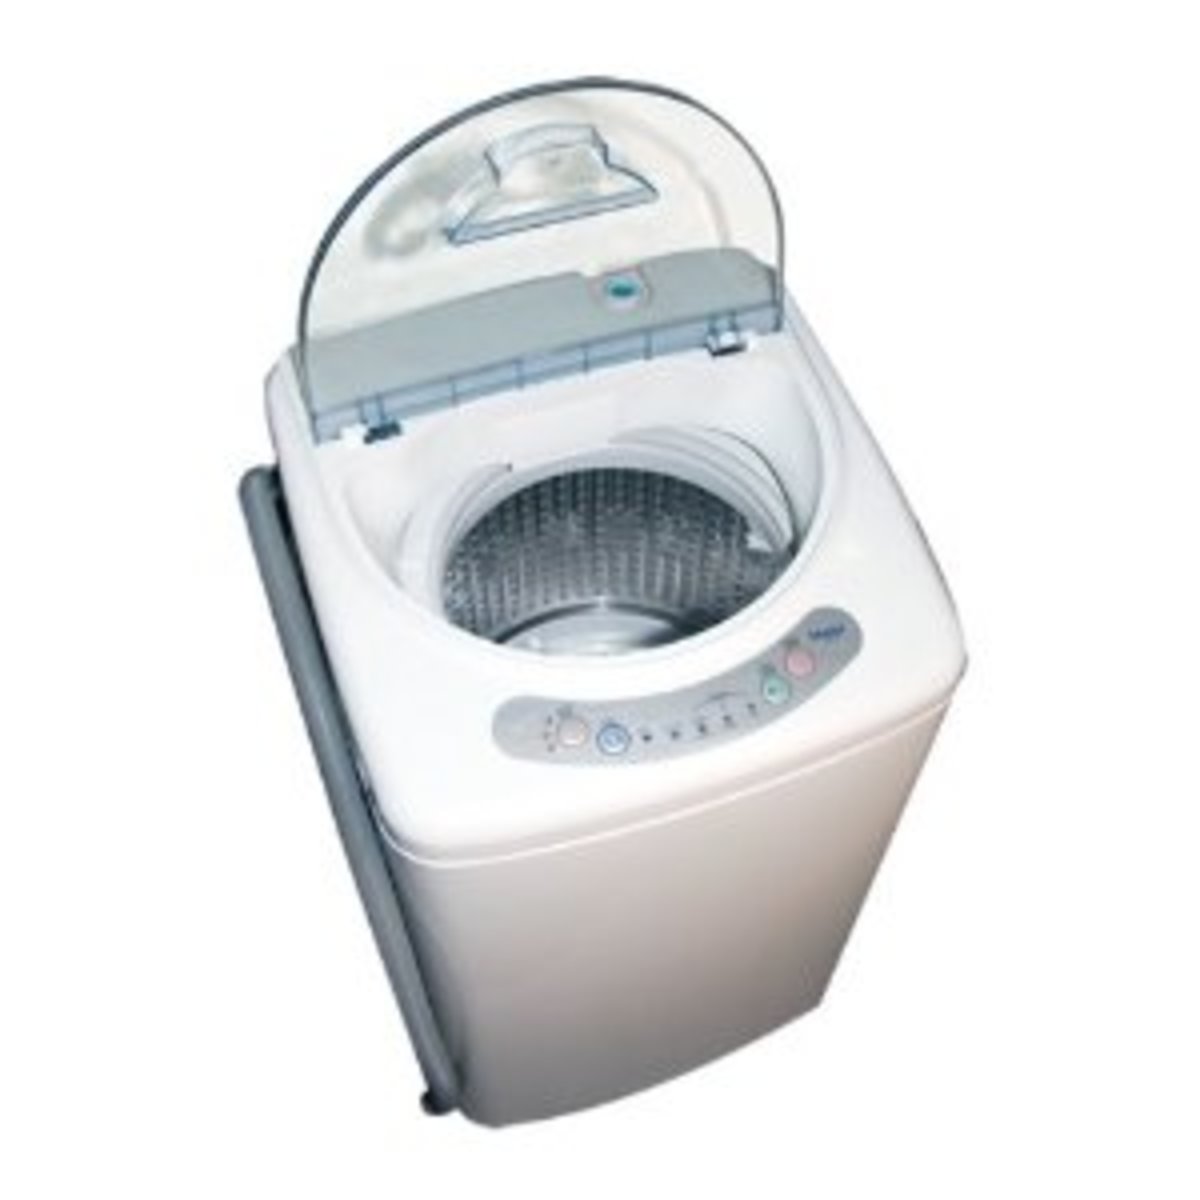 buying-a-mini-washing-machine